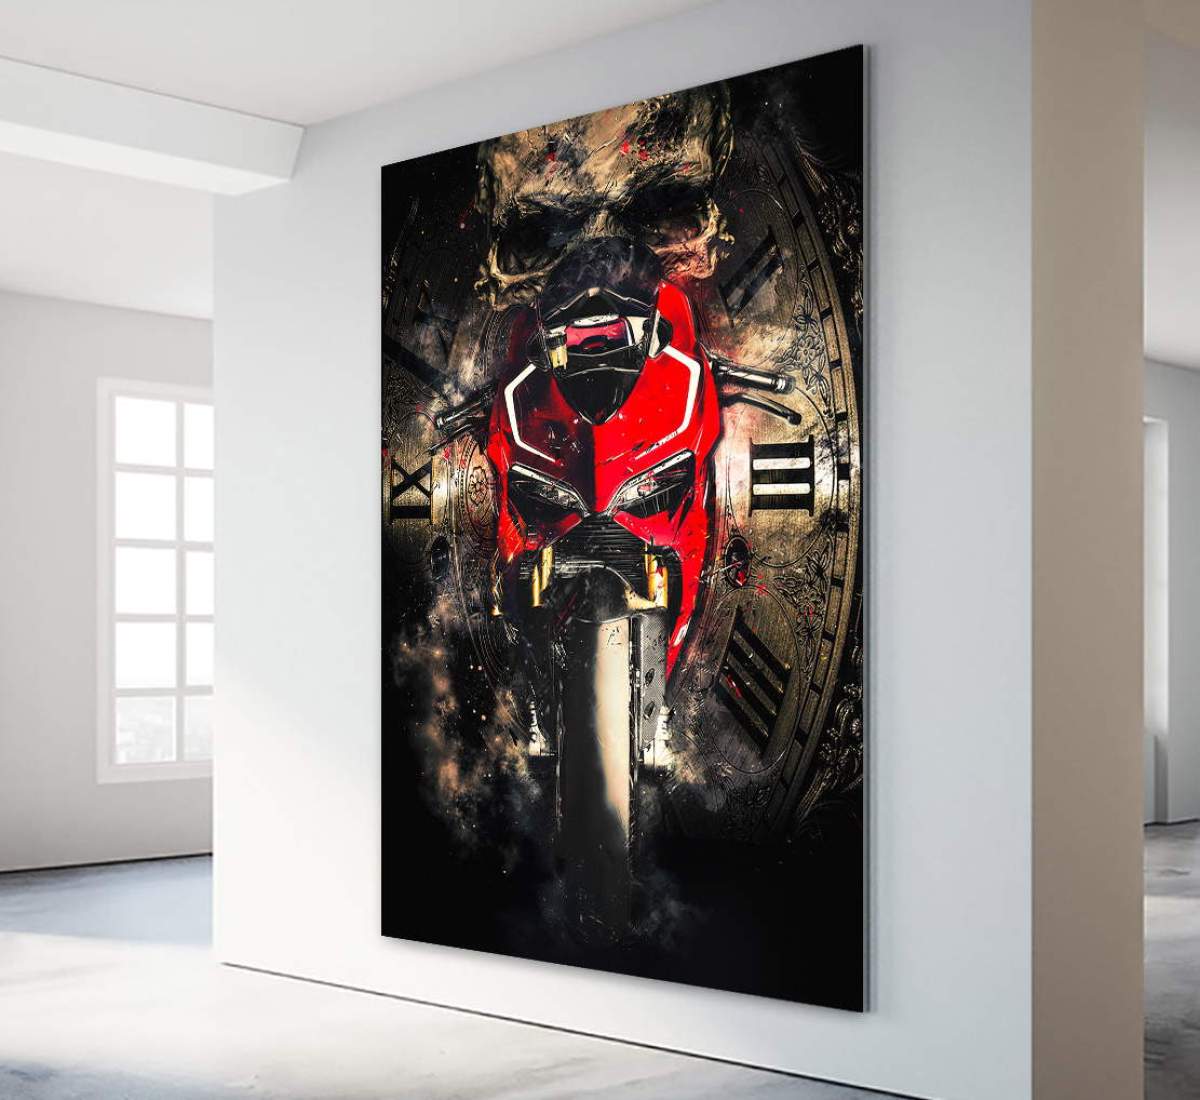 Ducati Wandbild Kunstgestalten24